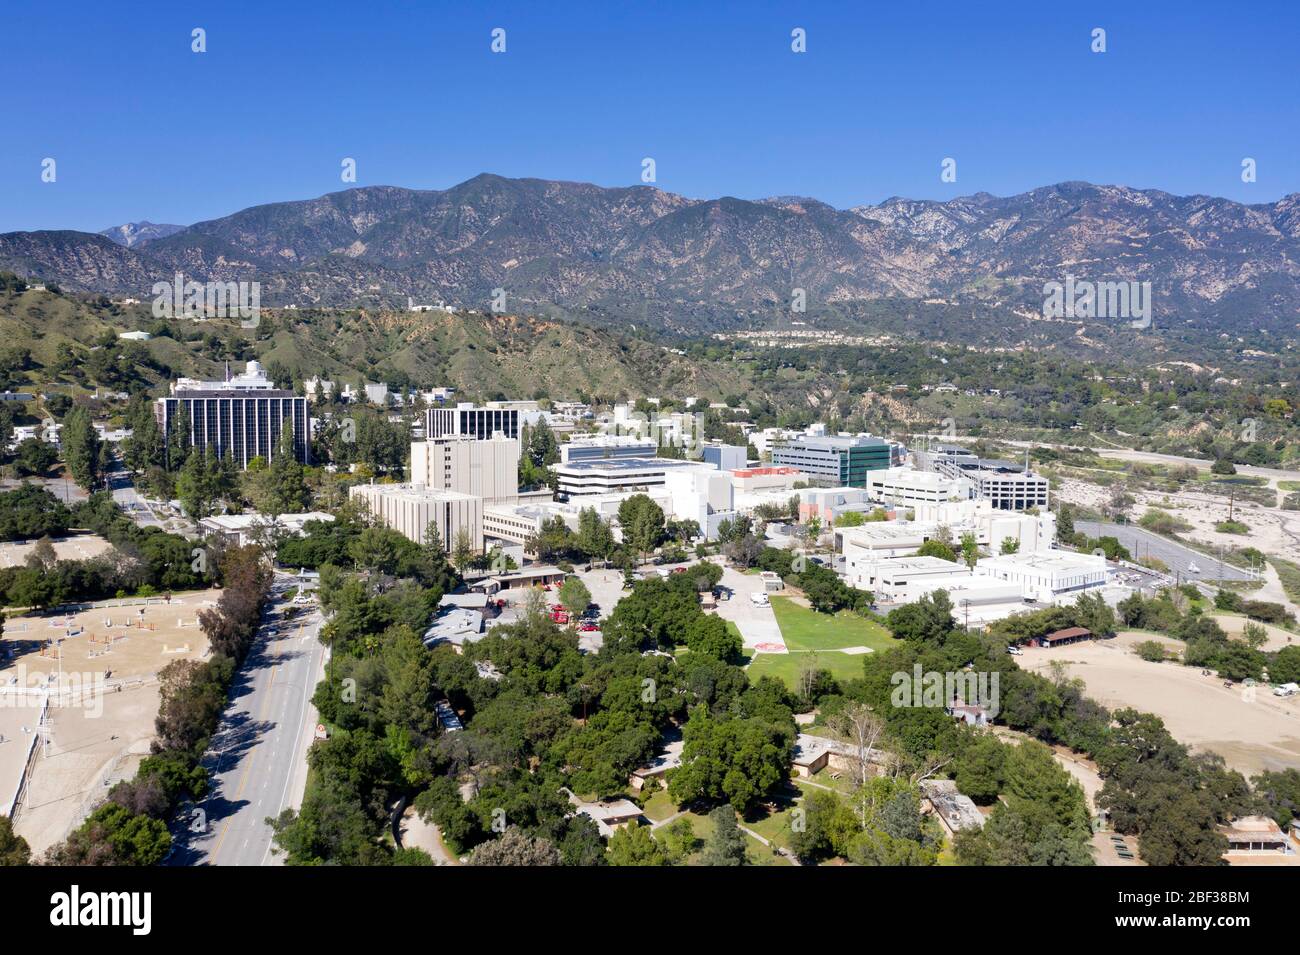 Vue aérienne du Jet propulsion Laboratory (JPL) de la NASA et de Caltech, situé dans les contreforts au-dessus de Pasadena, à la Canada Flintridge, en Californie Banque D'Images